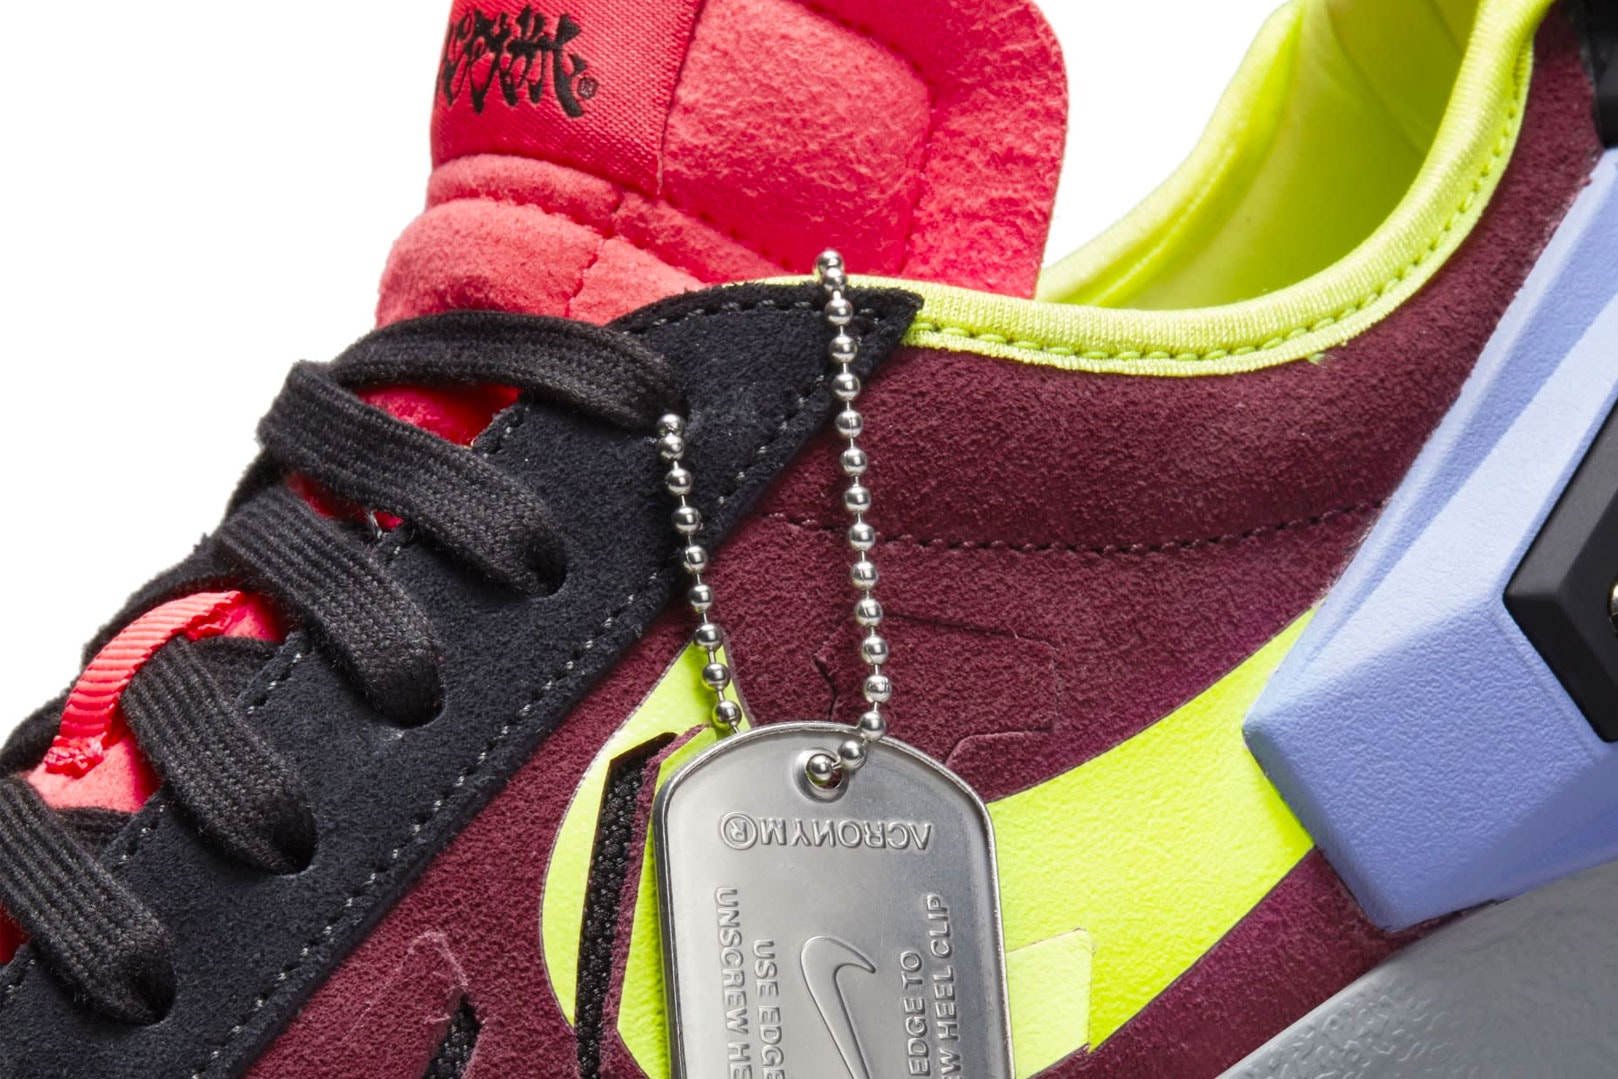 ACRONYM x Nike Blazer Low 聯乘鞋款官方圖輯正式發佈